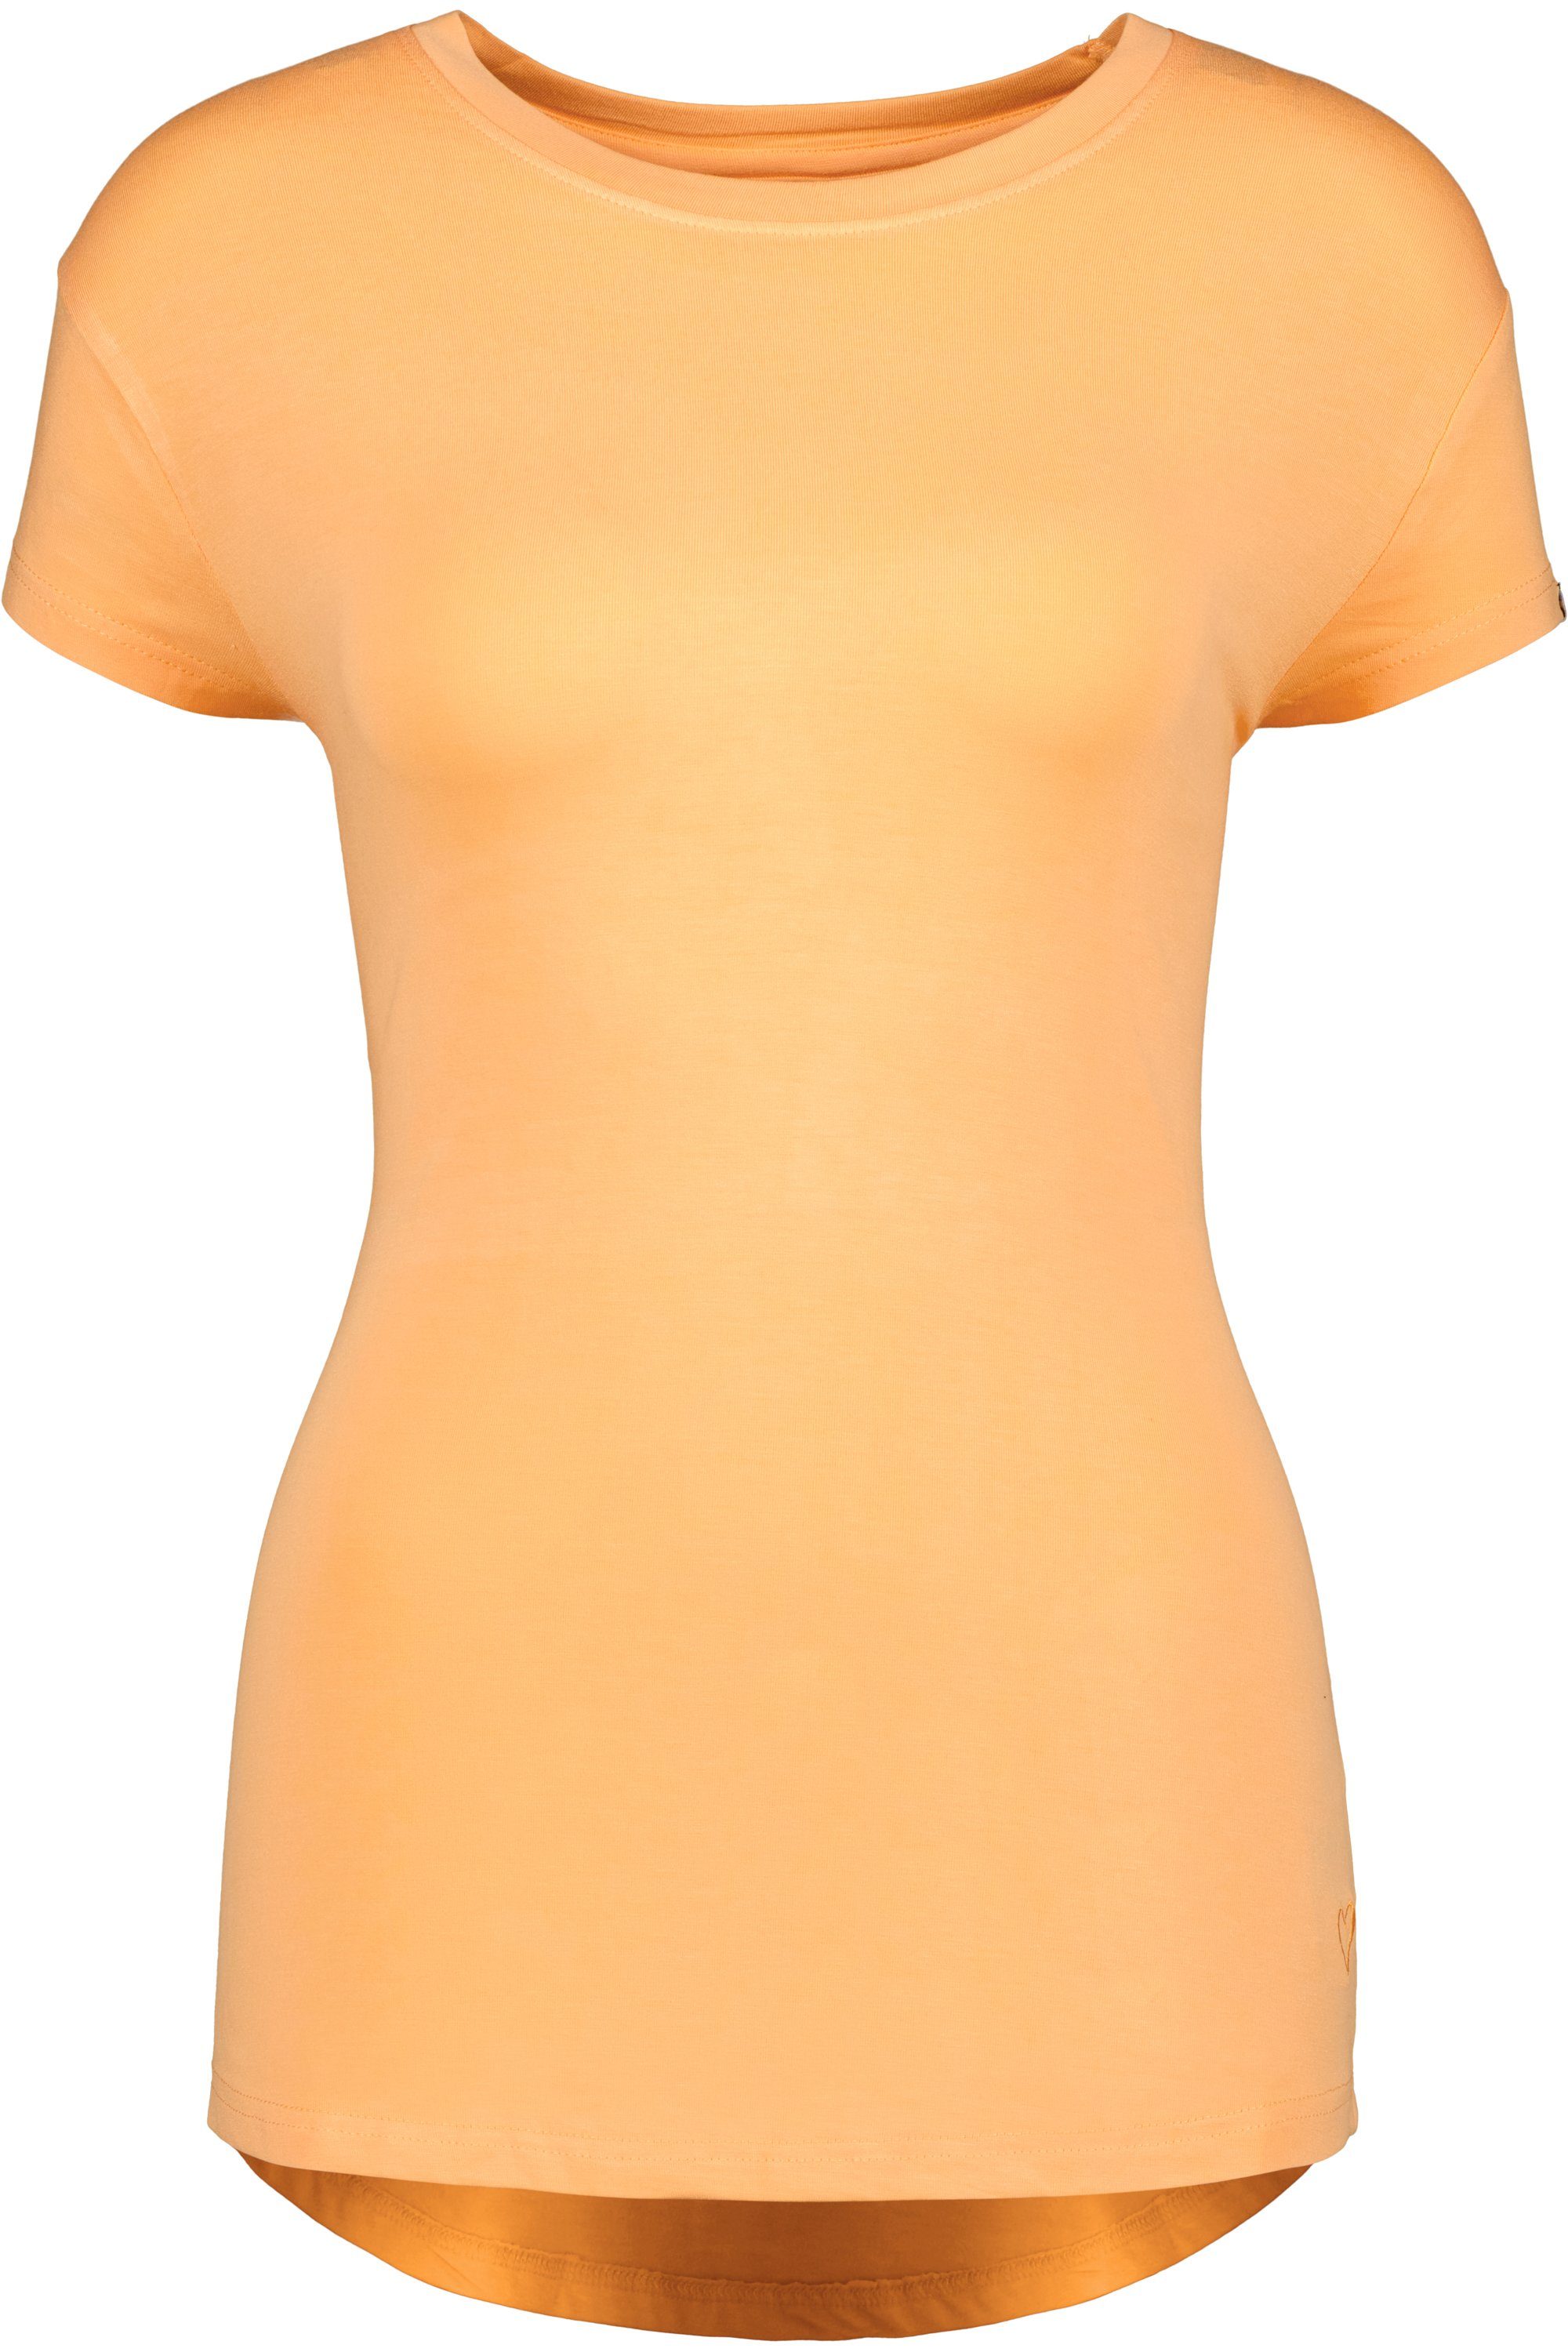 Shirt A Shirt tangerine MimmyAK Alife & Kickin Kurzarmshirt, Damen Rundhalsshirt